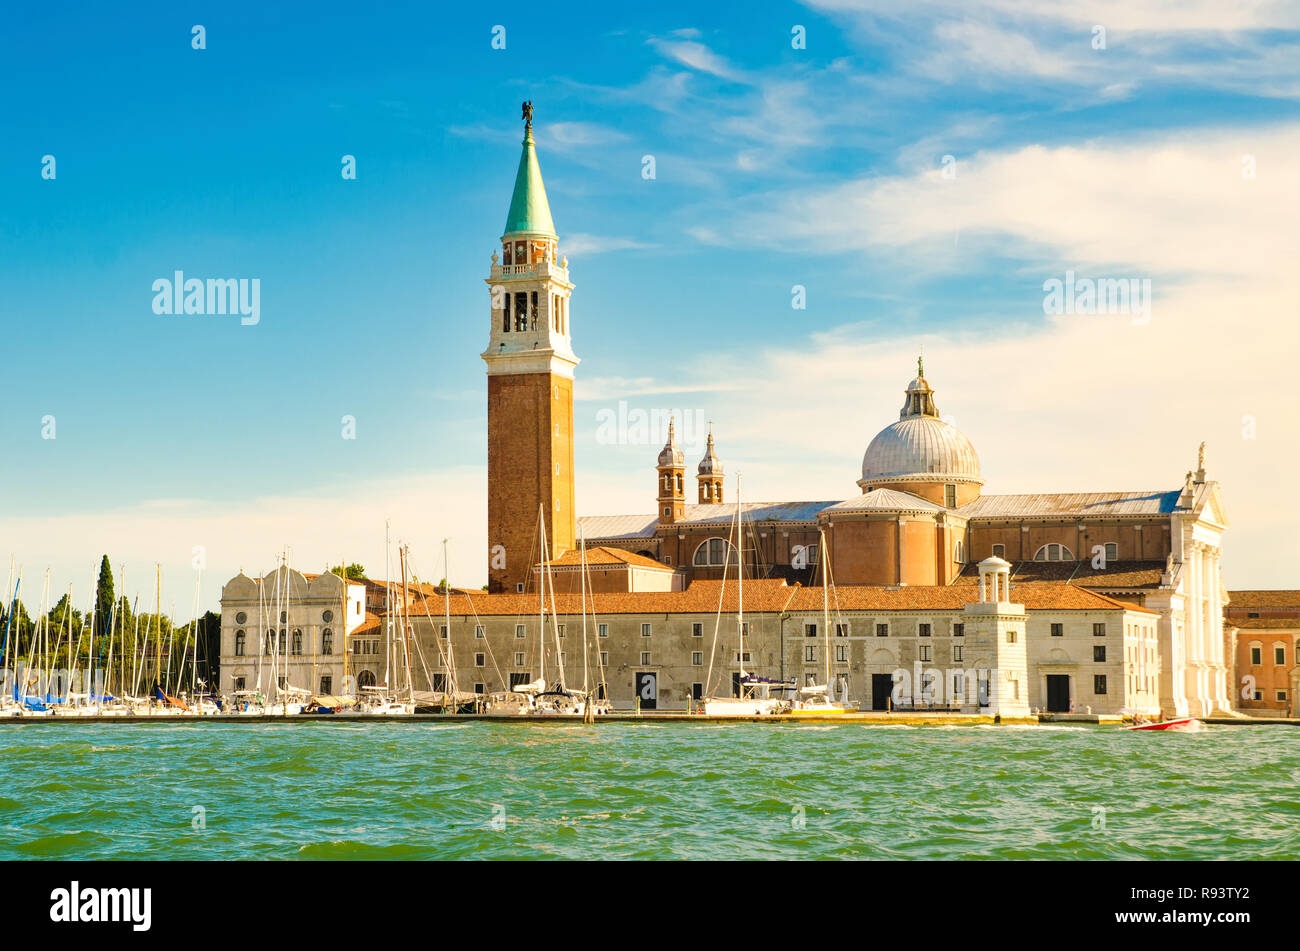 San Giorgio Maggiore island, Venice, Italy Stock Photo